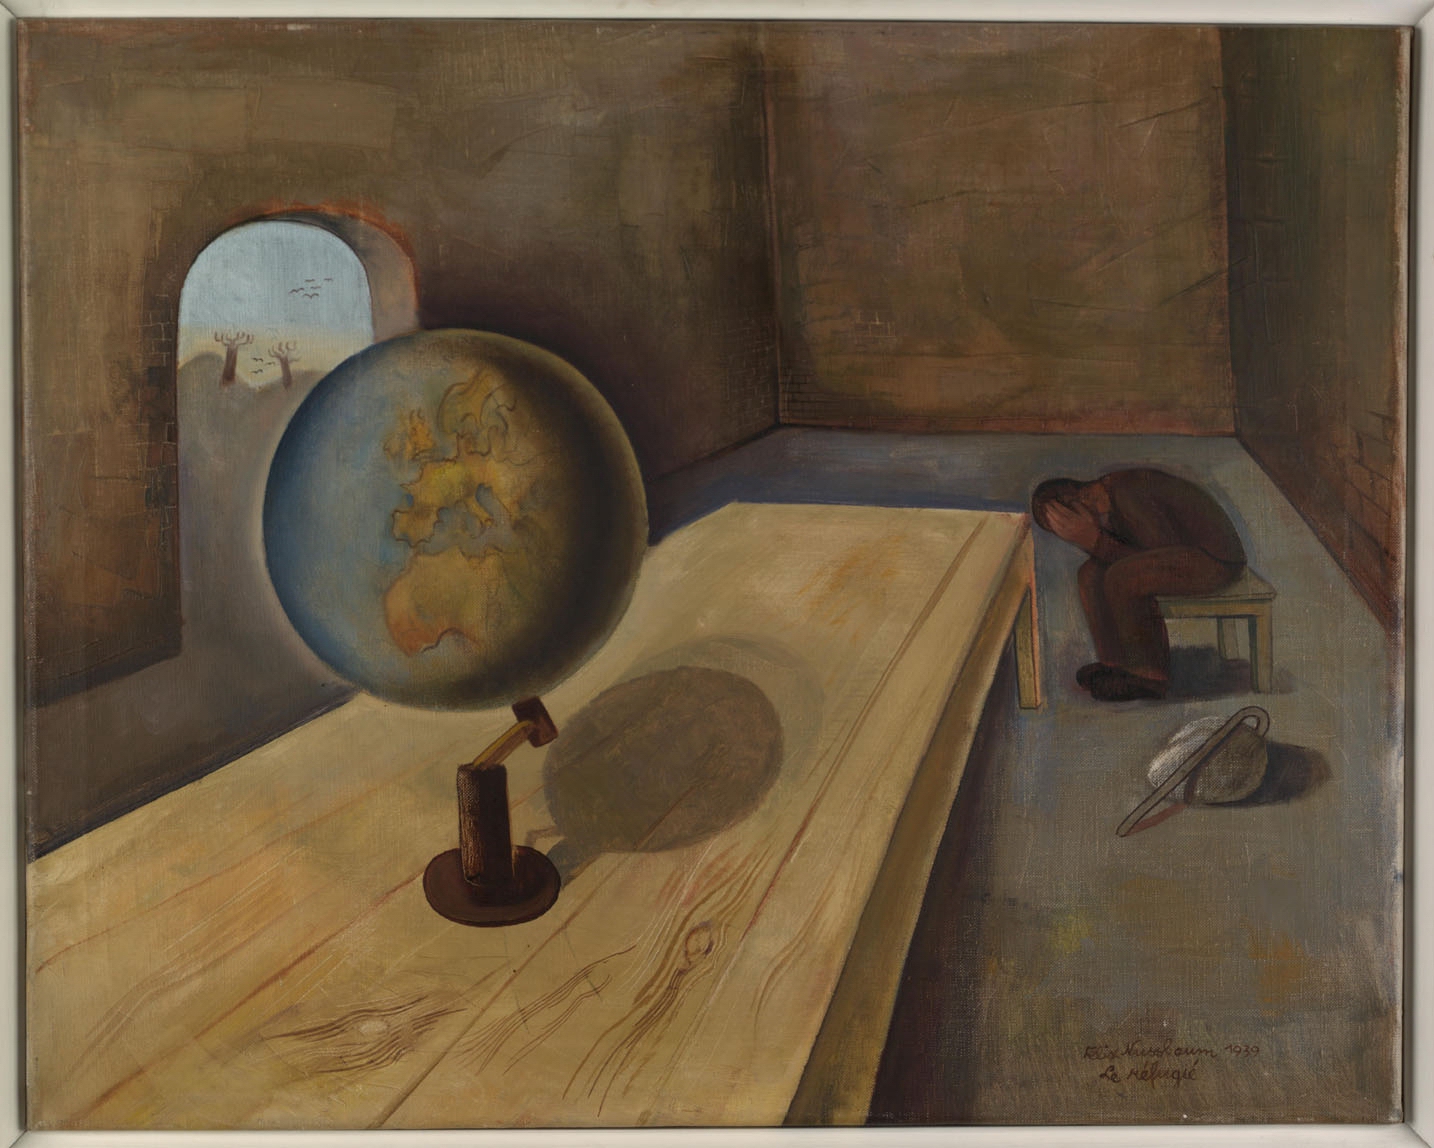 Felix Nussbaum (1904-1944).  The Refugee, 1939.  Oil on canvas